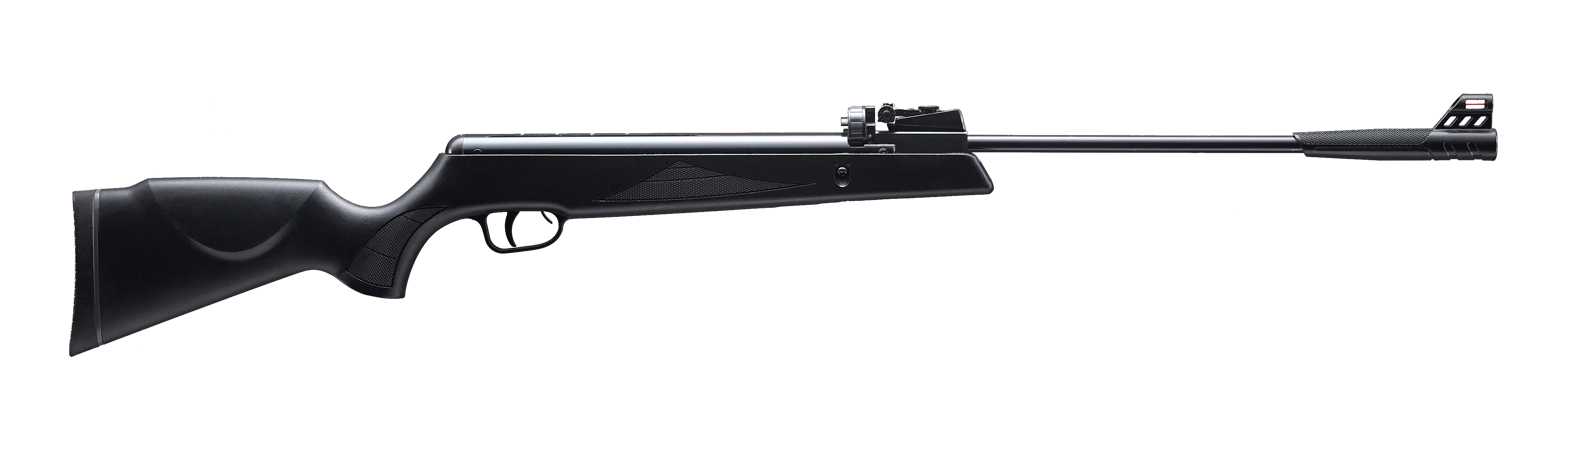 Snowpeak GR1000X 4.5MM Air Rifle